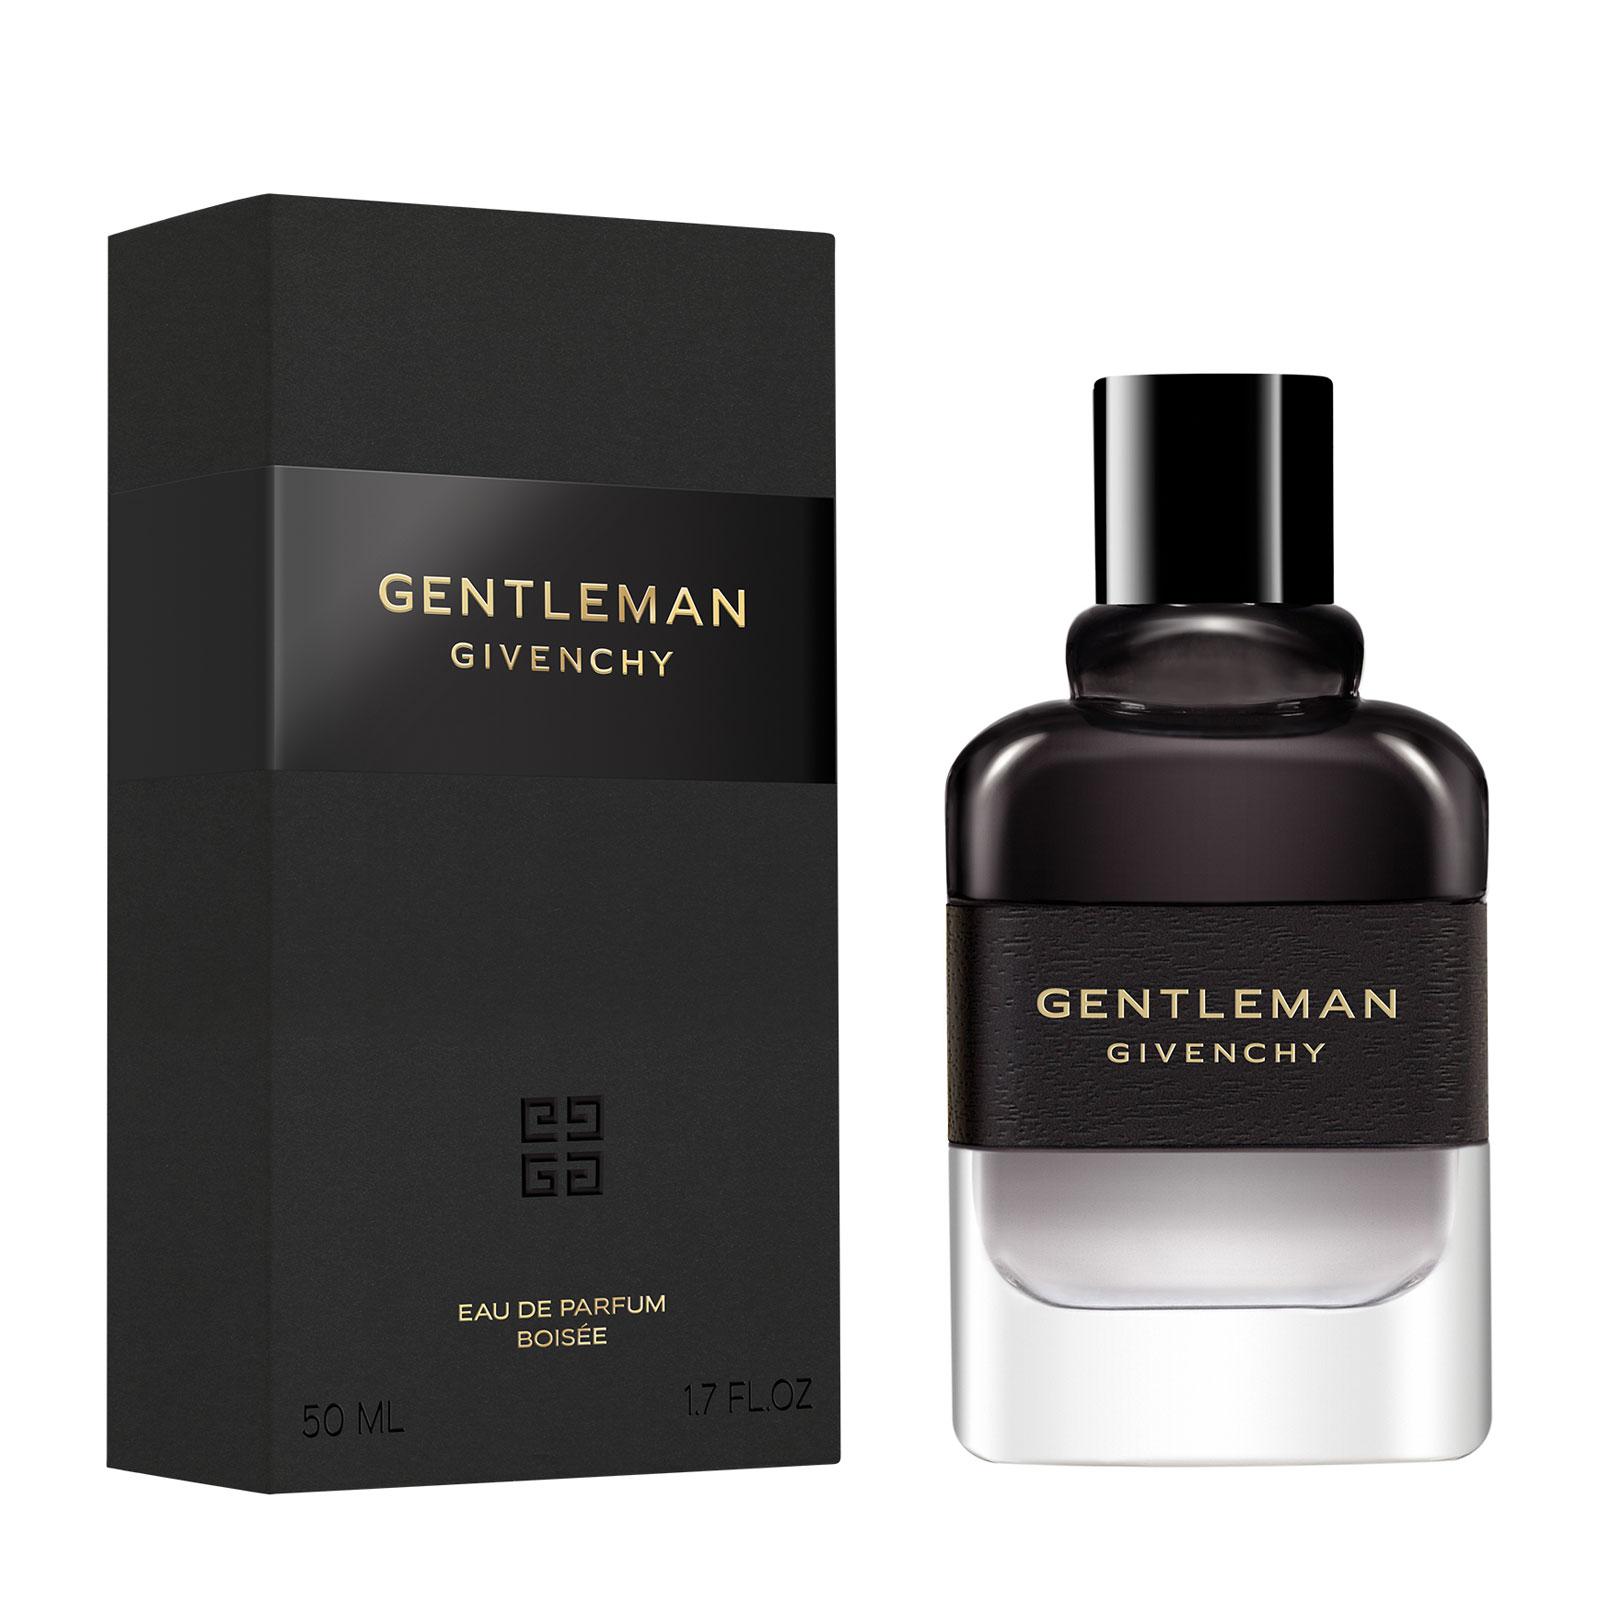 GIVENCHY Gentleman Eau de Parfum Boisée 50ml - Feelunique